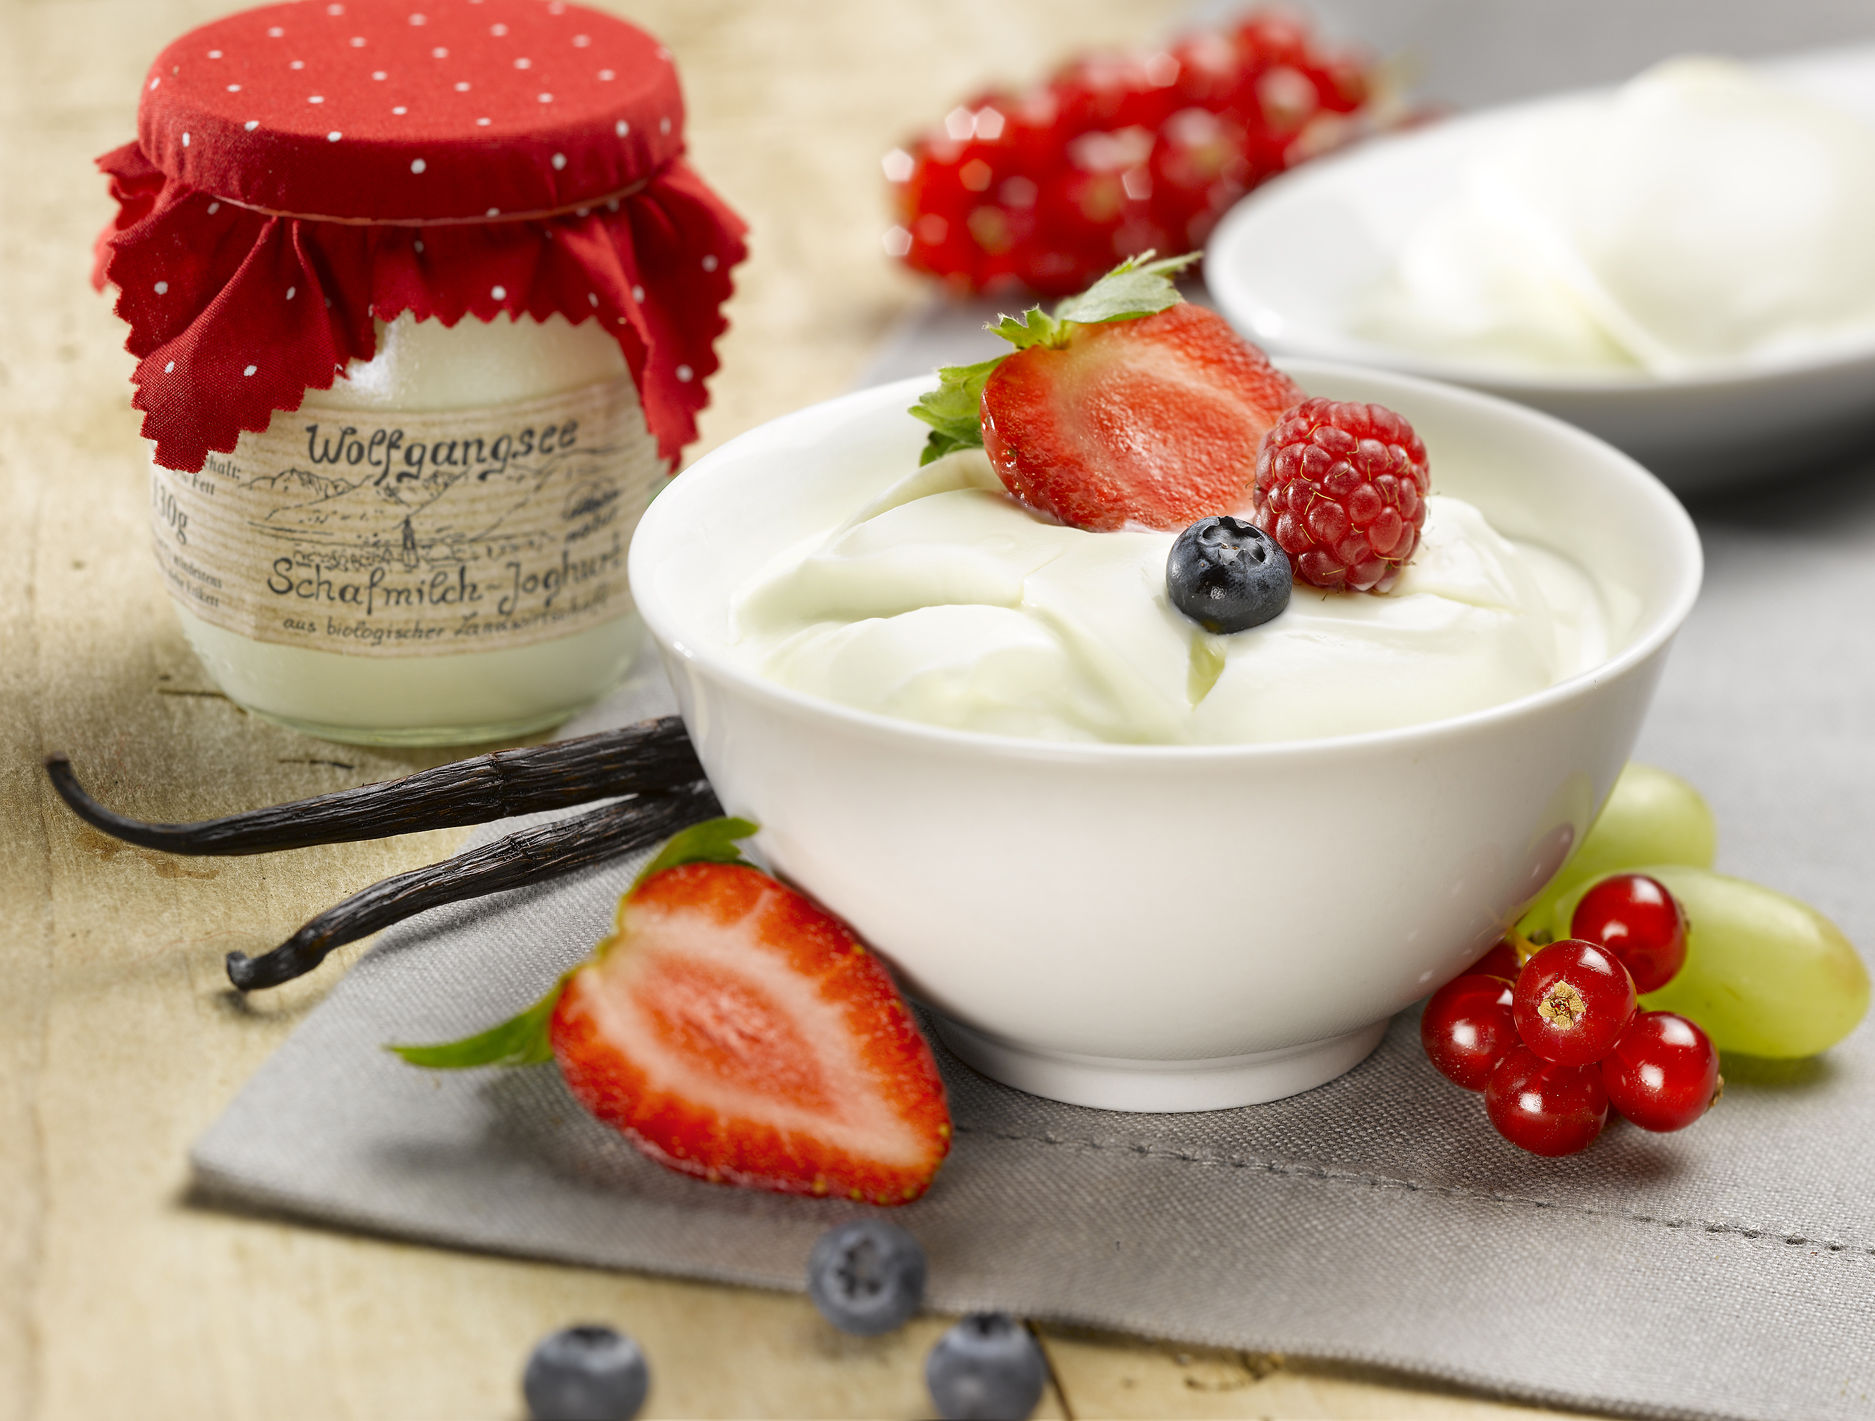 Glenisk yoghurt